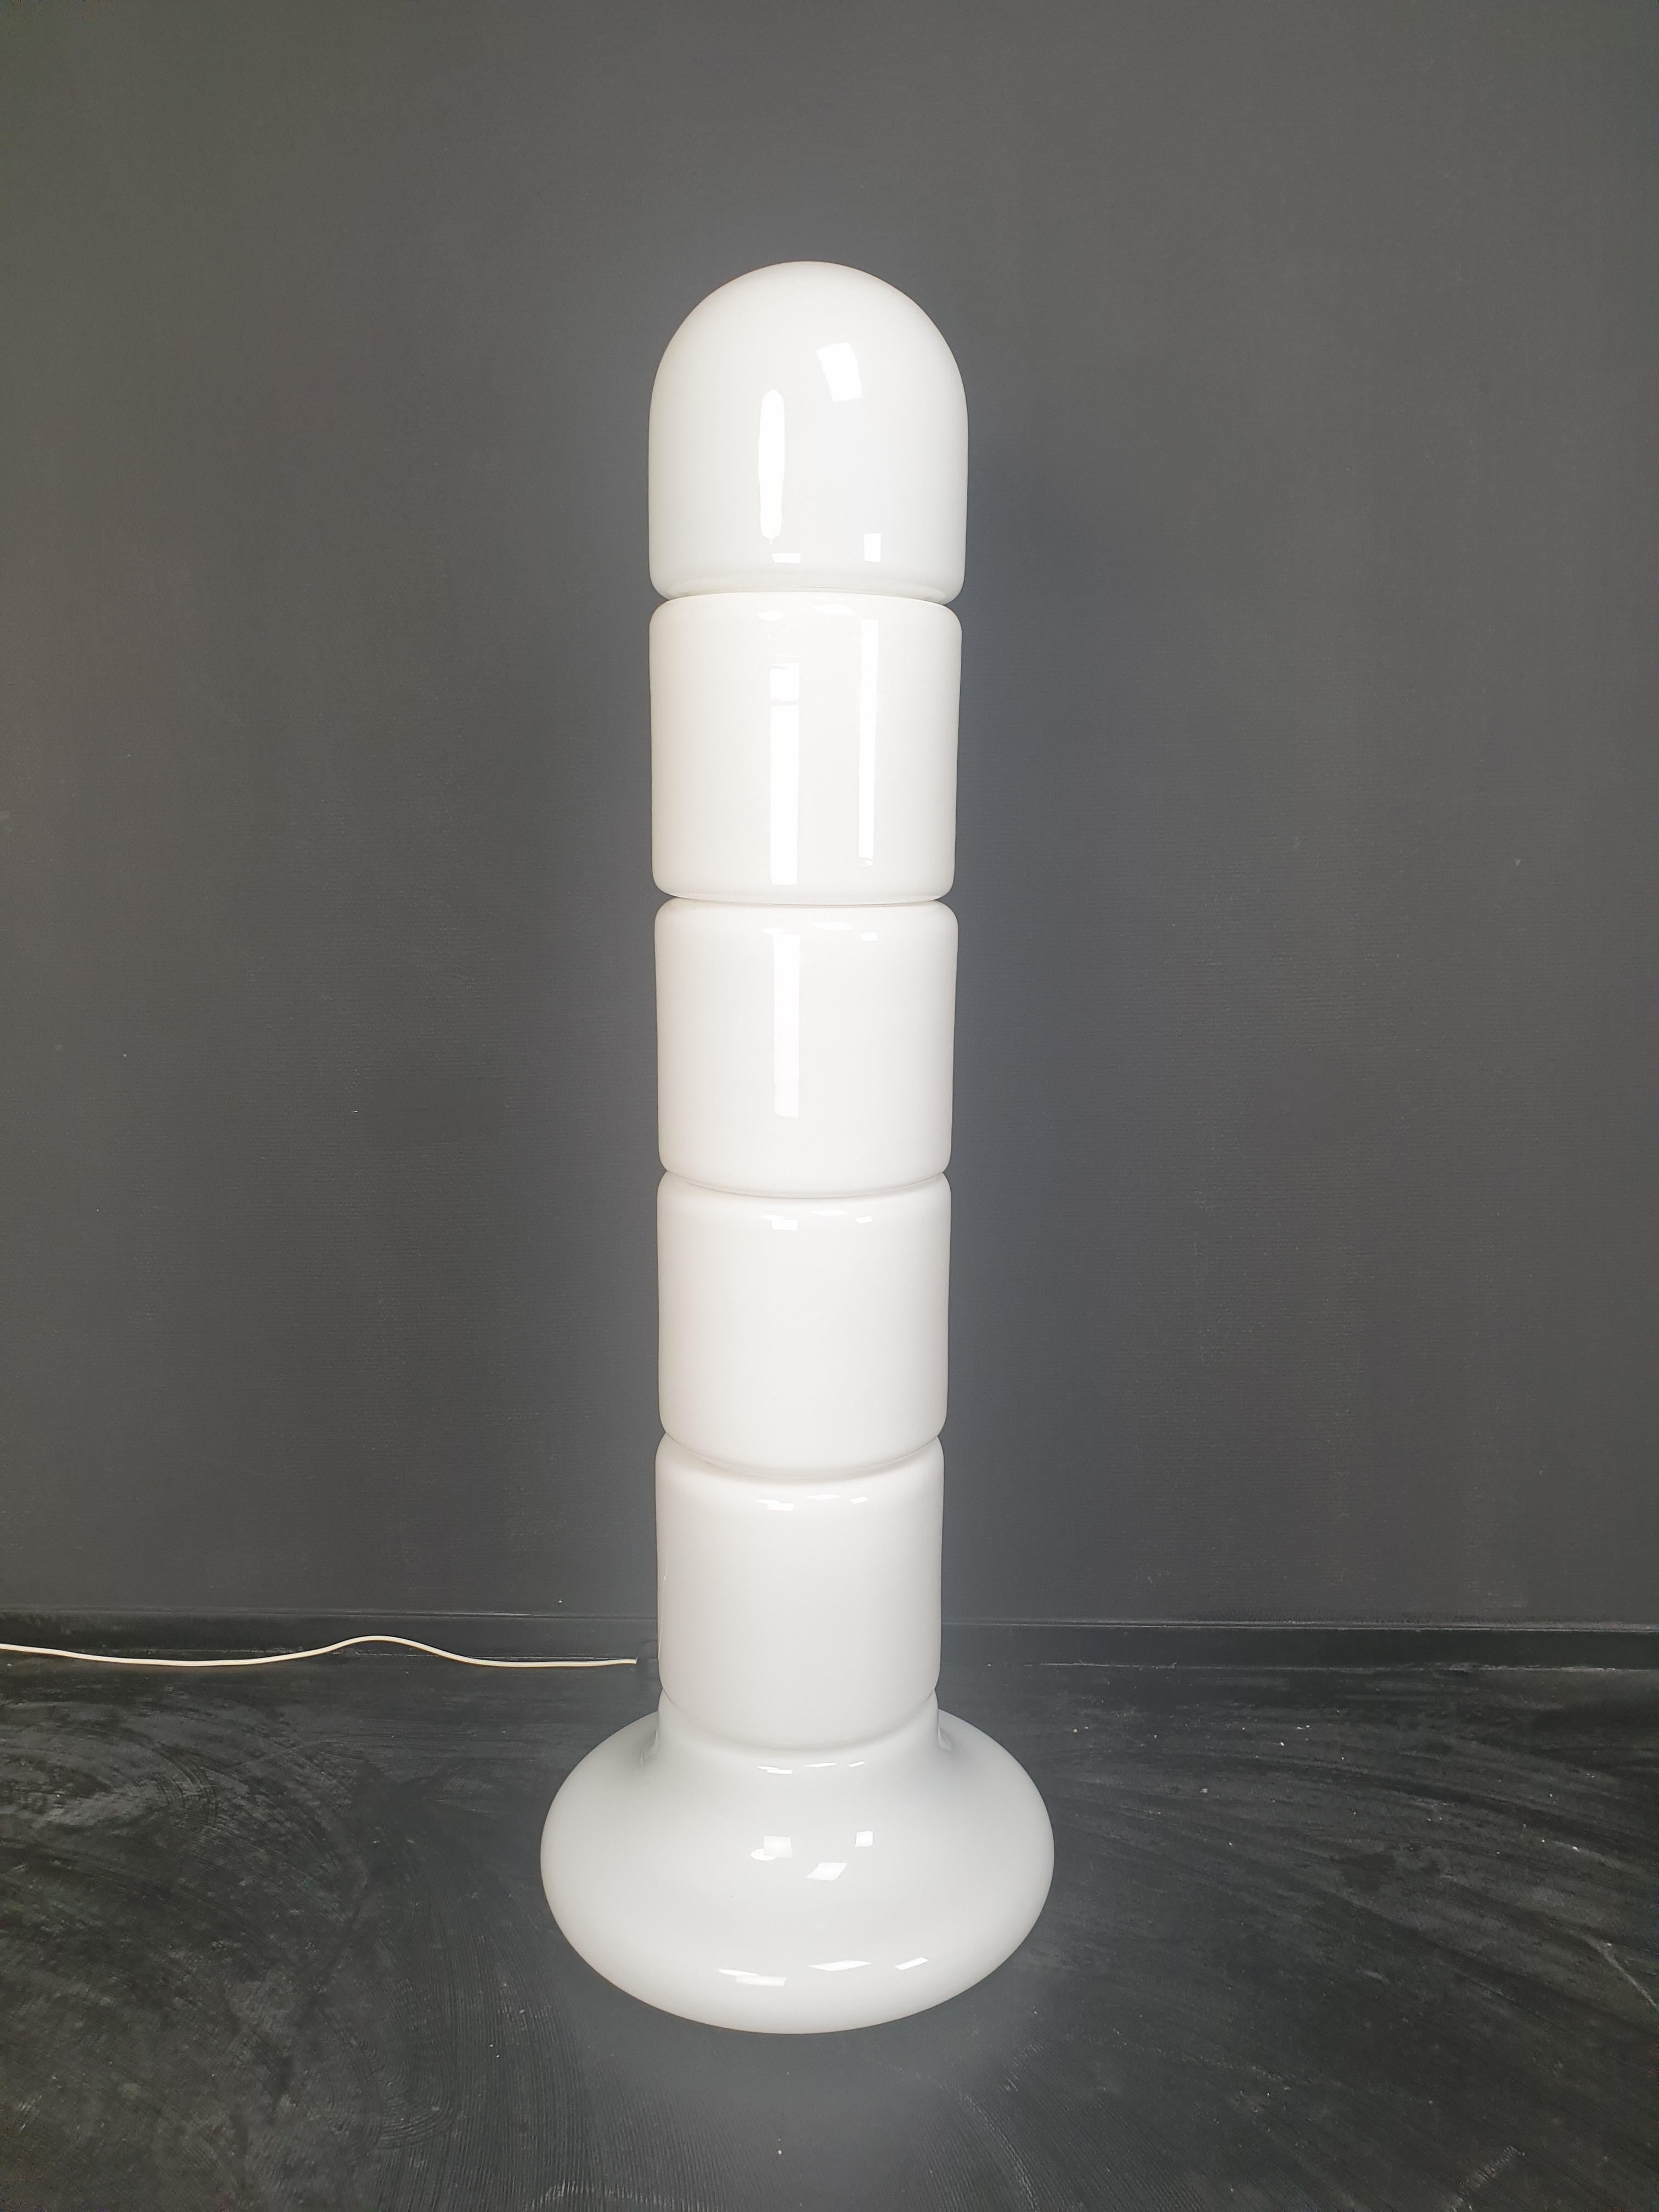 Très rare et décoratif lampadaire Zea de Claudio Salocchi pour Lumenform, années 1970.

Cette magnifique lampe italienne se compose de 6 pièces en verre opalin fabriquées à la main.

Comme vous pouvez le voir sur les photos, il donne une très